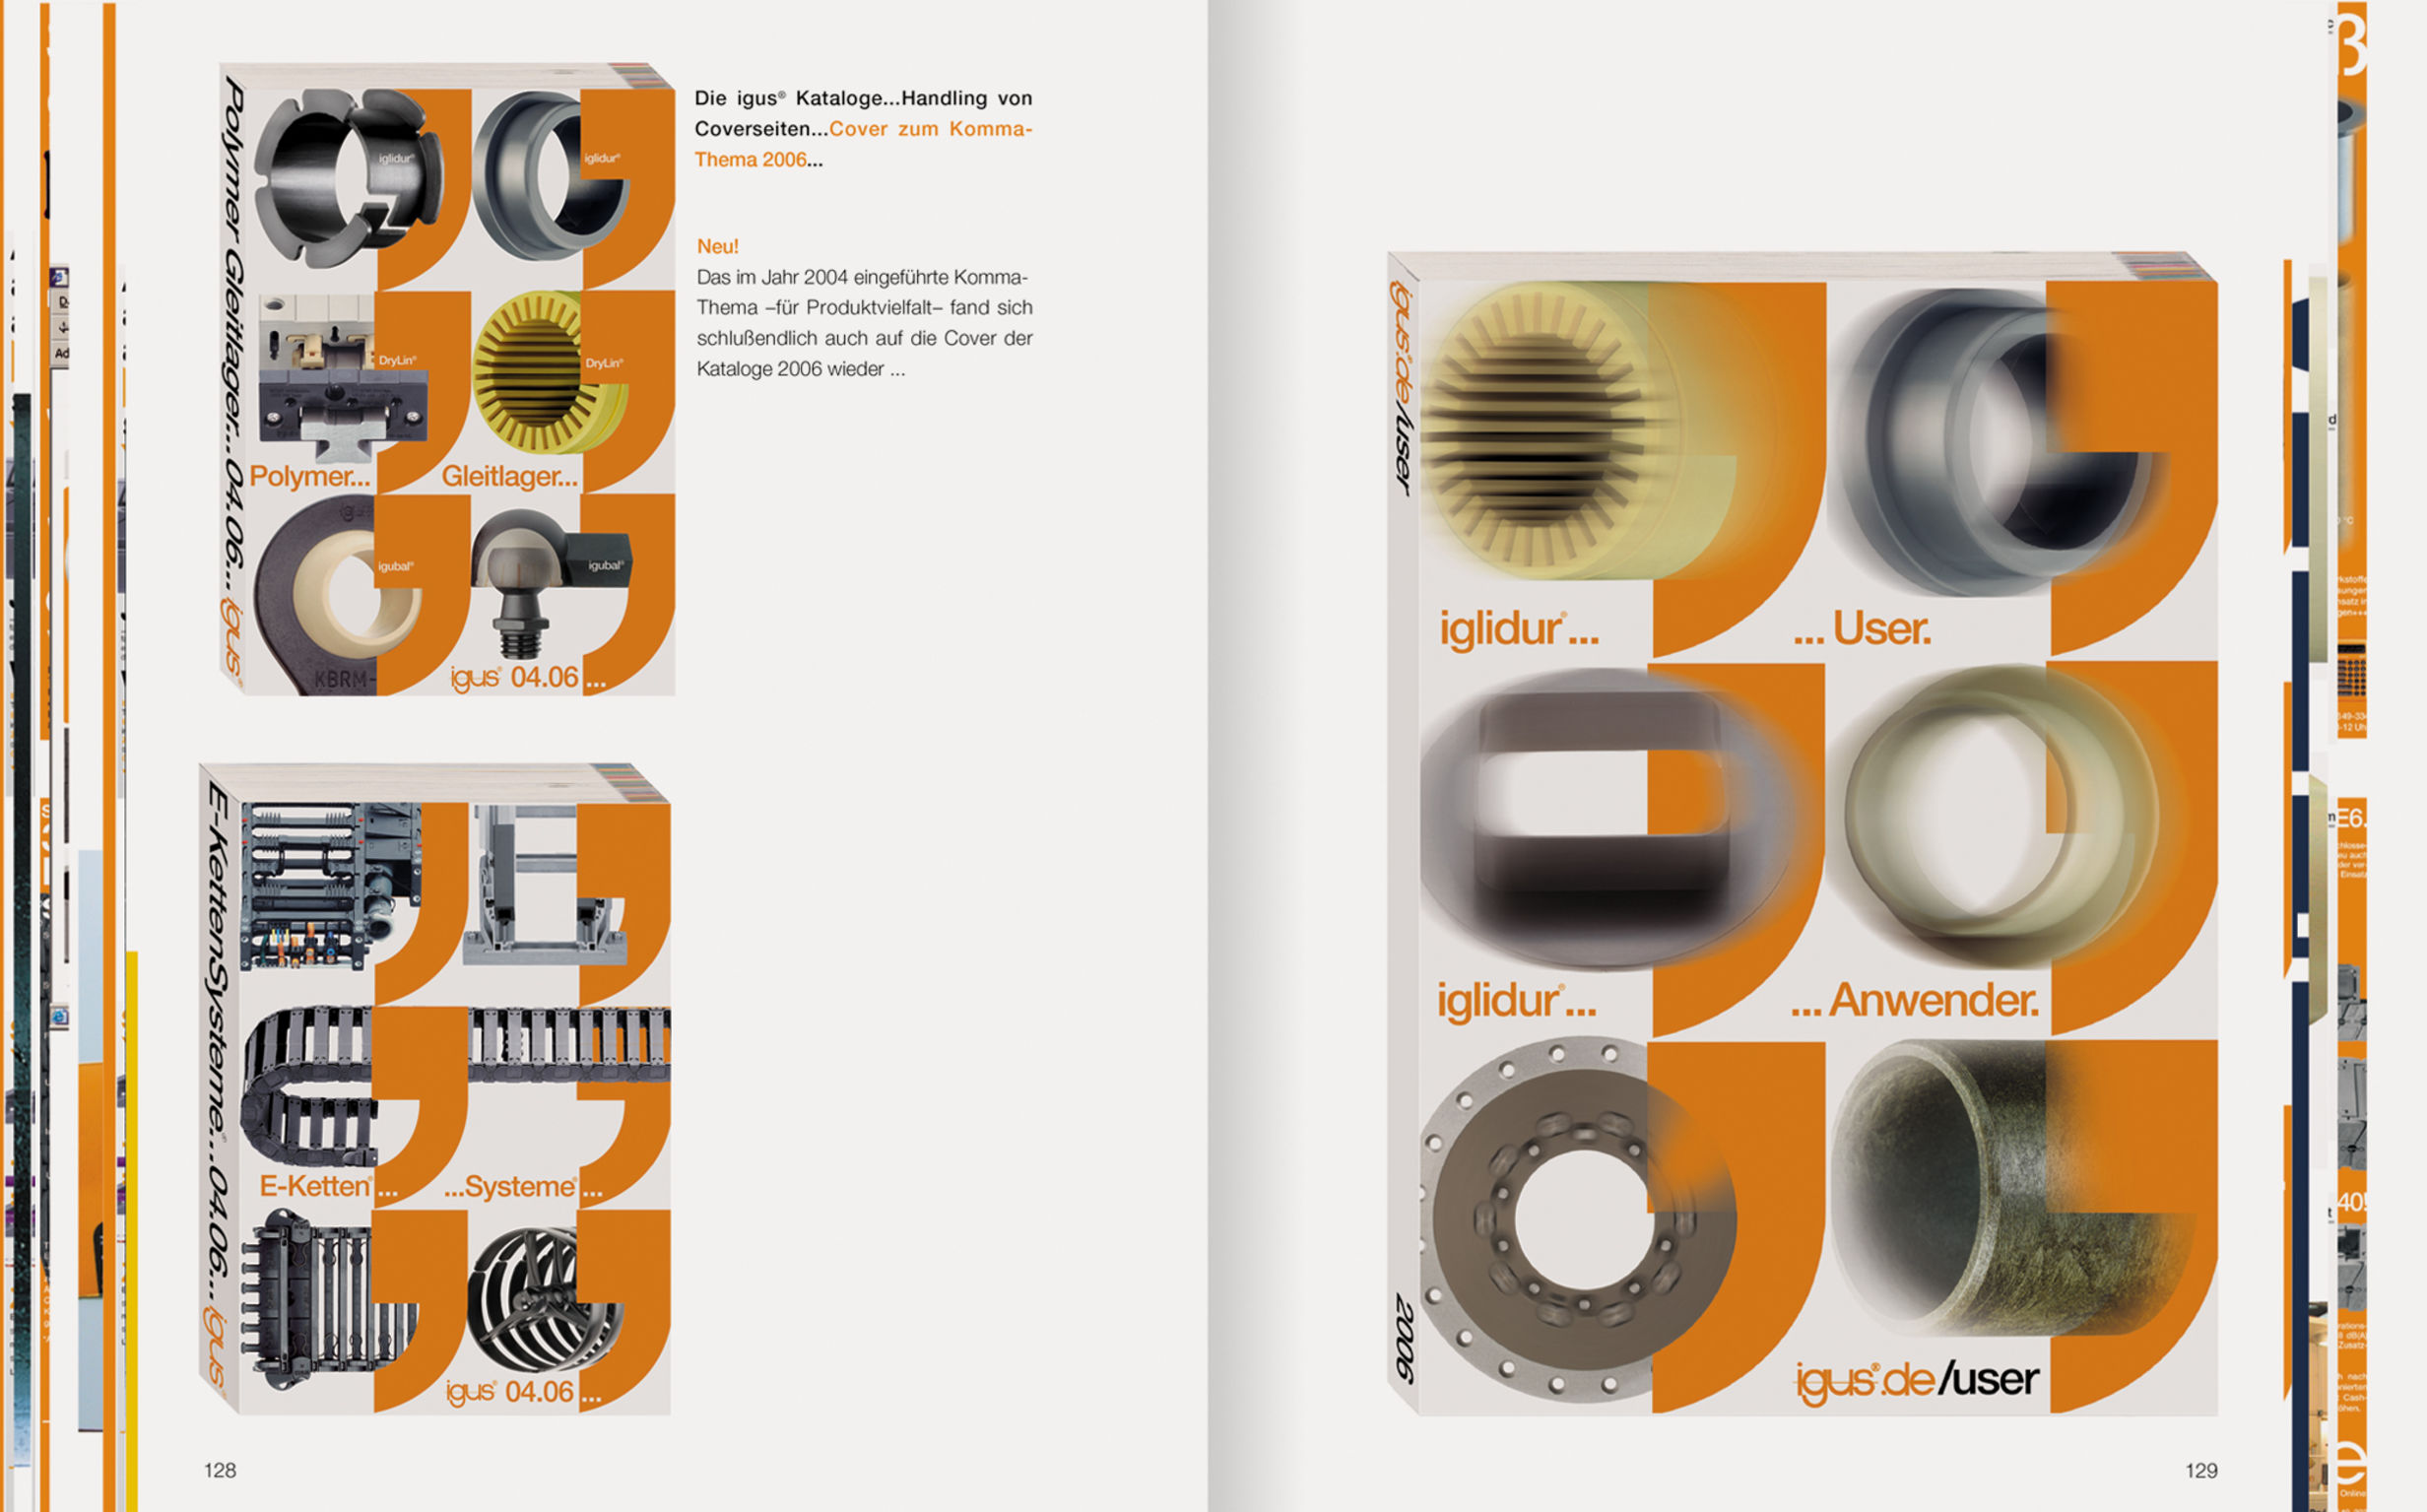 igus® corporate design manual